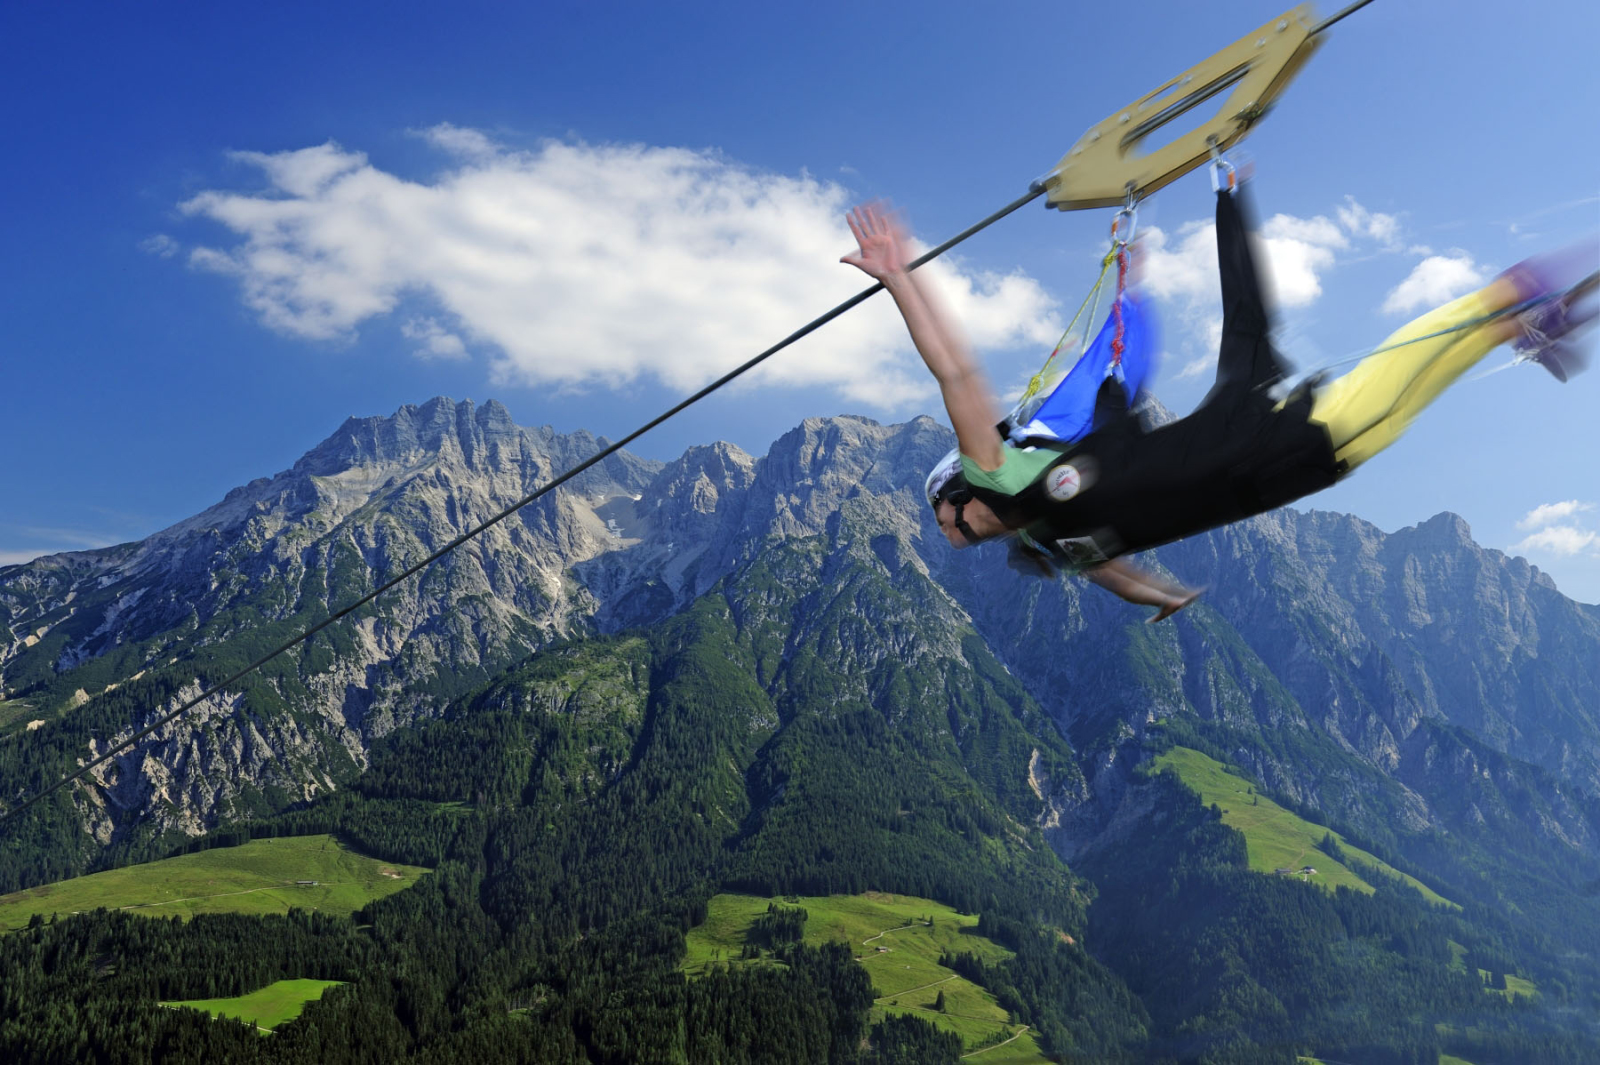 A leggyorsabb zipline vagy flying fox a világon. A Leogang feletti Asitzon található szerkentyűvel akár 140 km/órával is lehet repülni!